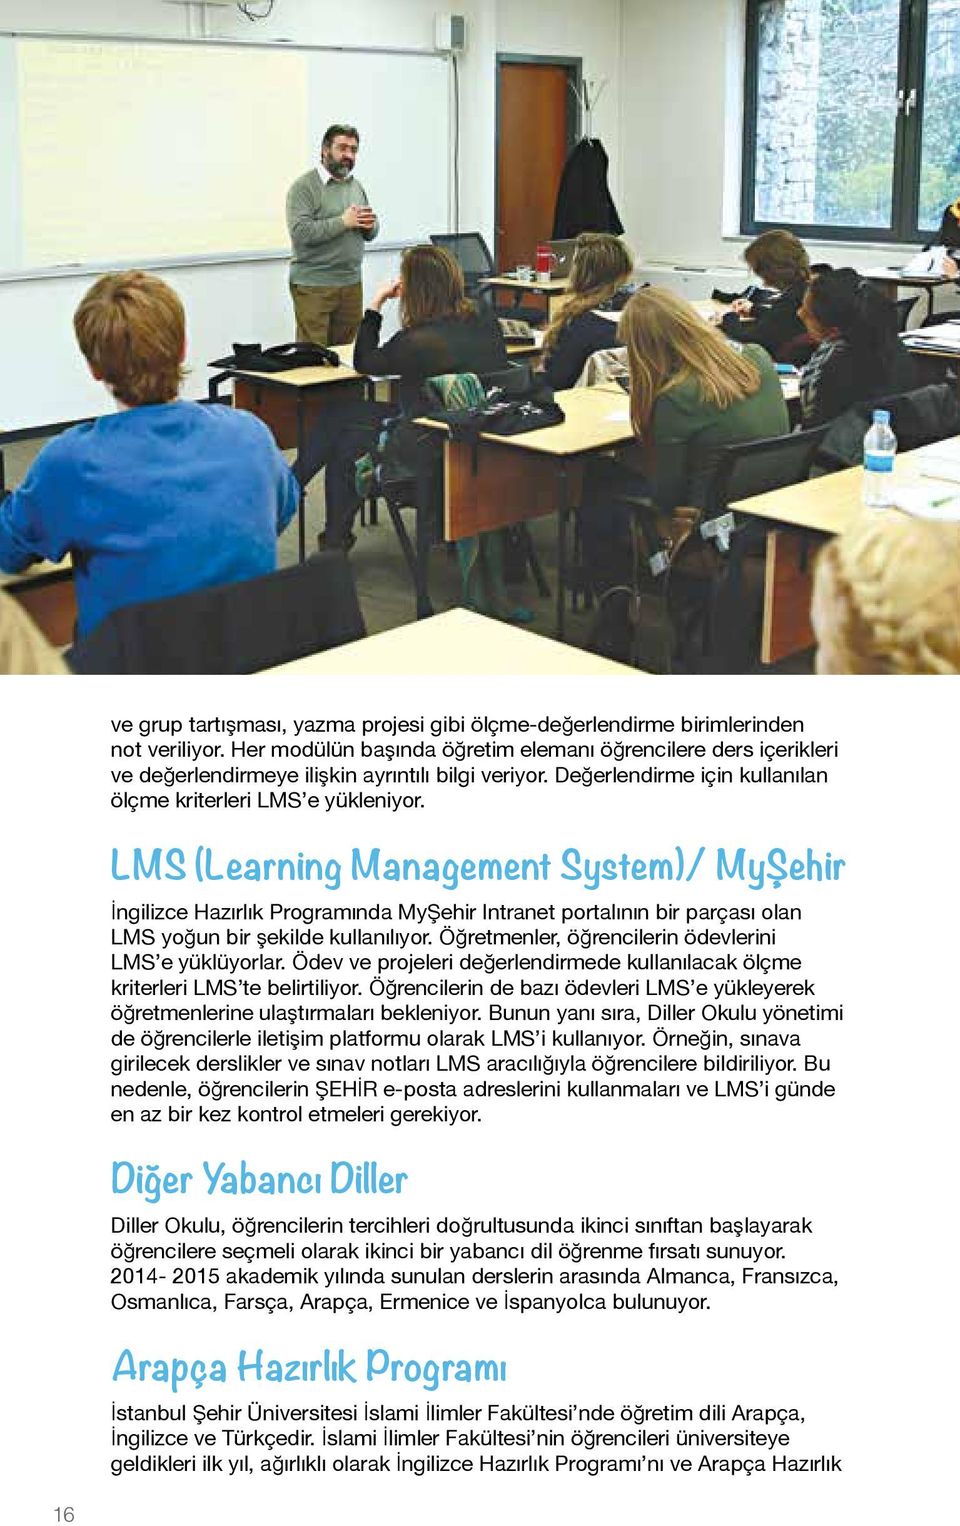 LMS (Learning Management System)/ MyŞehir İngilizce Hazırlık Programında MyŞehir Intranet portalının bir parçası olan LMS yoğun bir şekilde kullanılıyor.